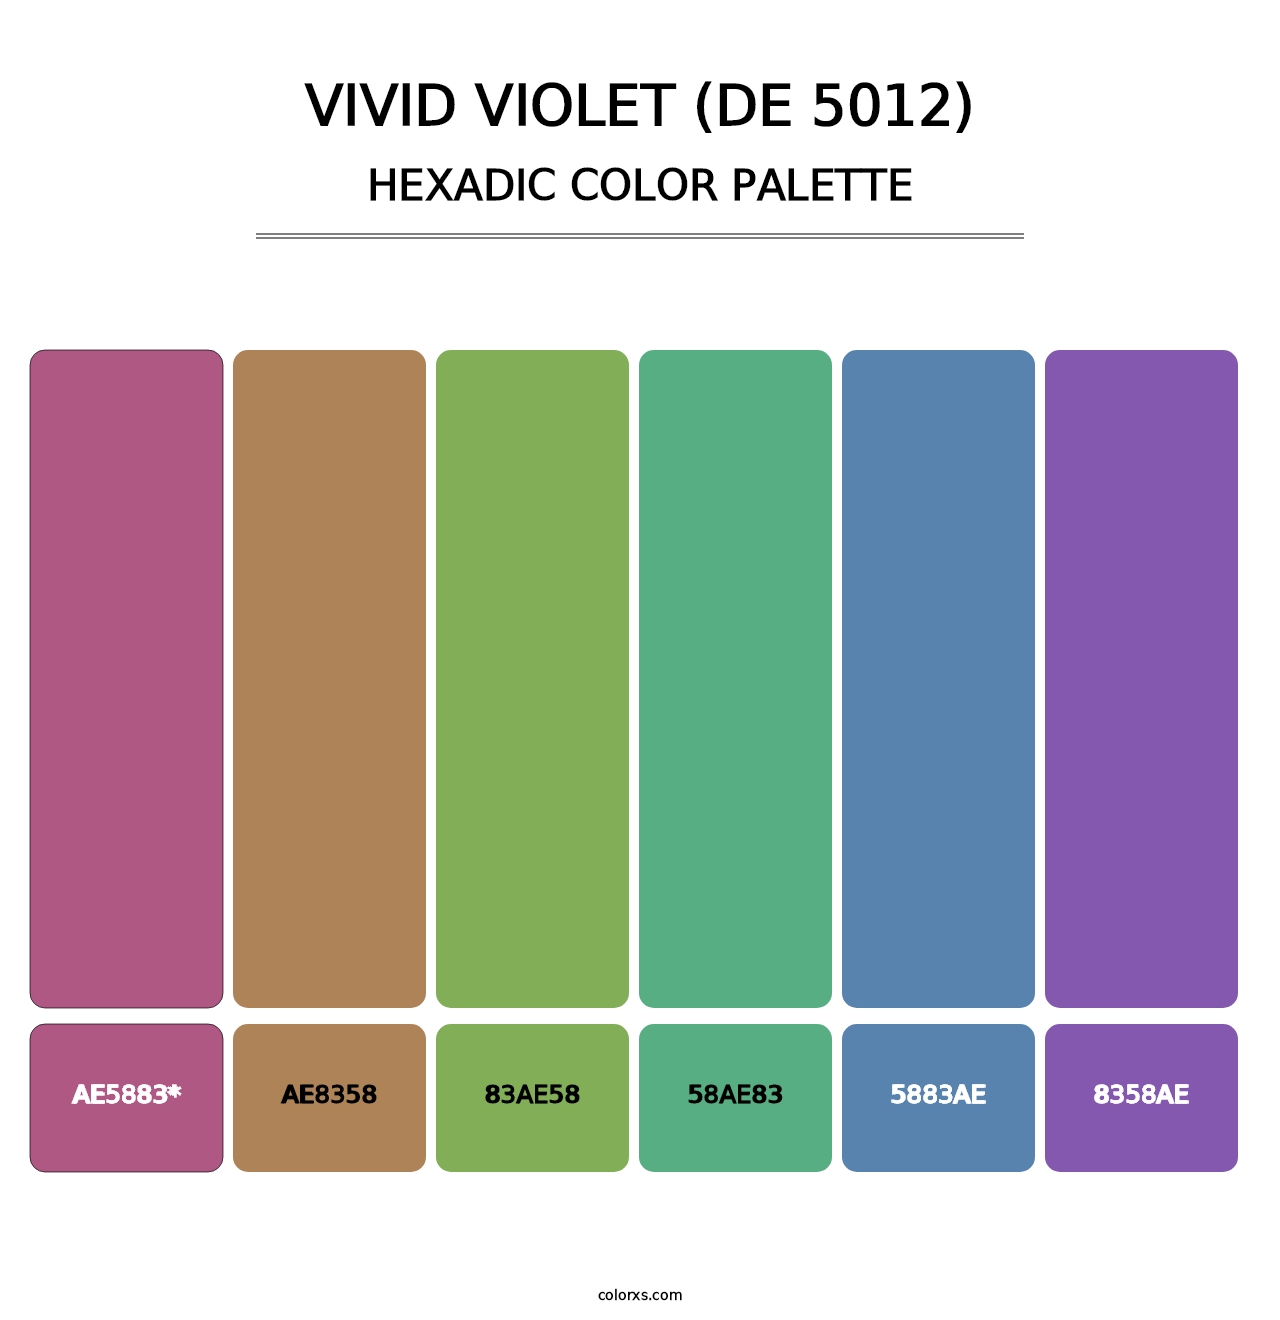 Vivid Violet (DE 5012) - Hexadic Color Palette